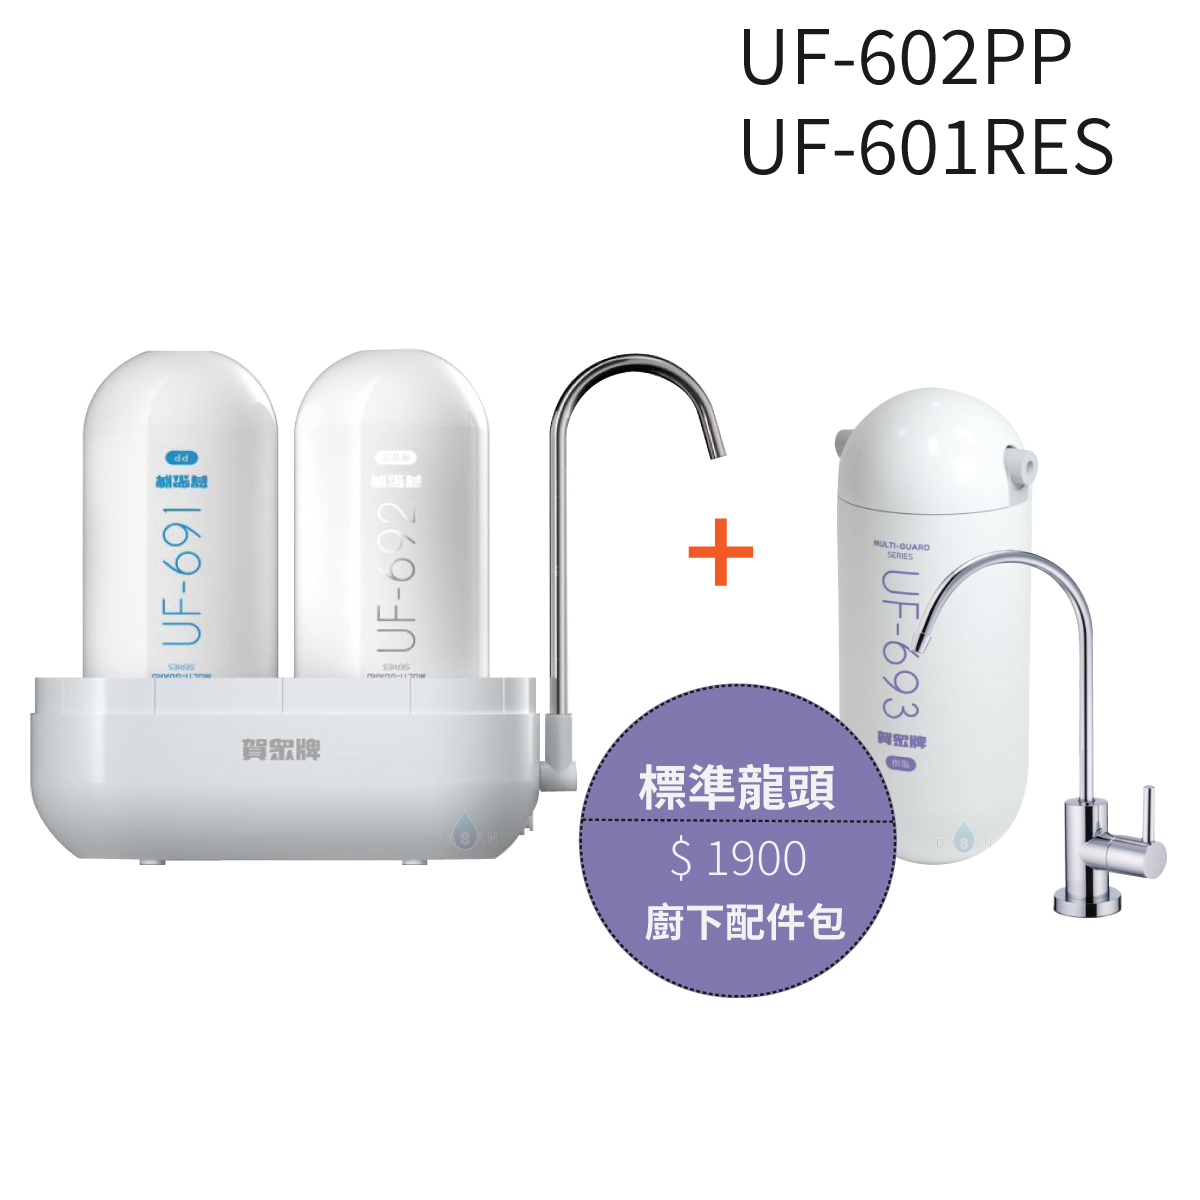 【賀眾牌】UF-602PP複合式防衛淨水器潔淨組 +UF-601RES樹脂濾芯組+標準龍頭配件包